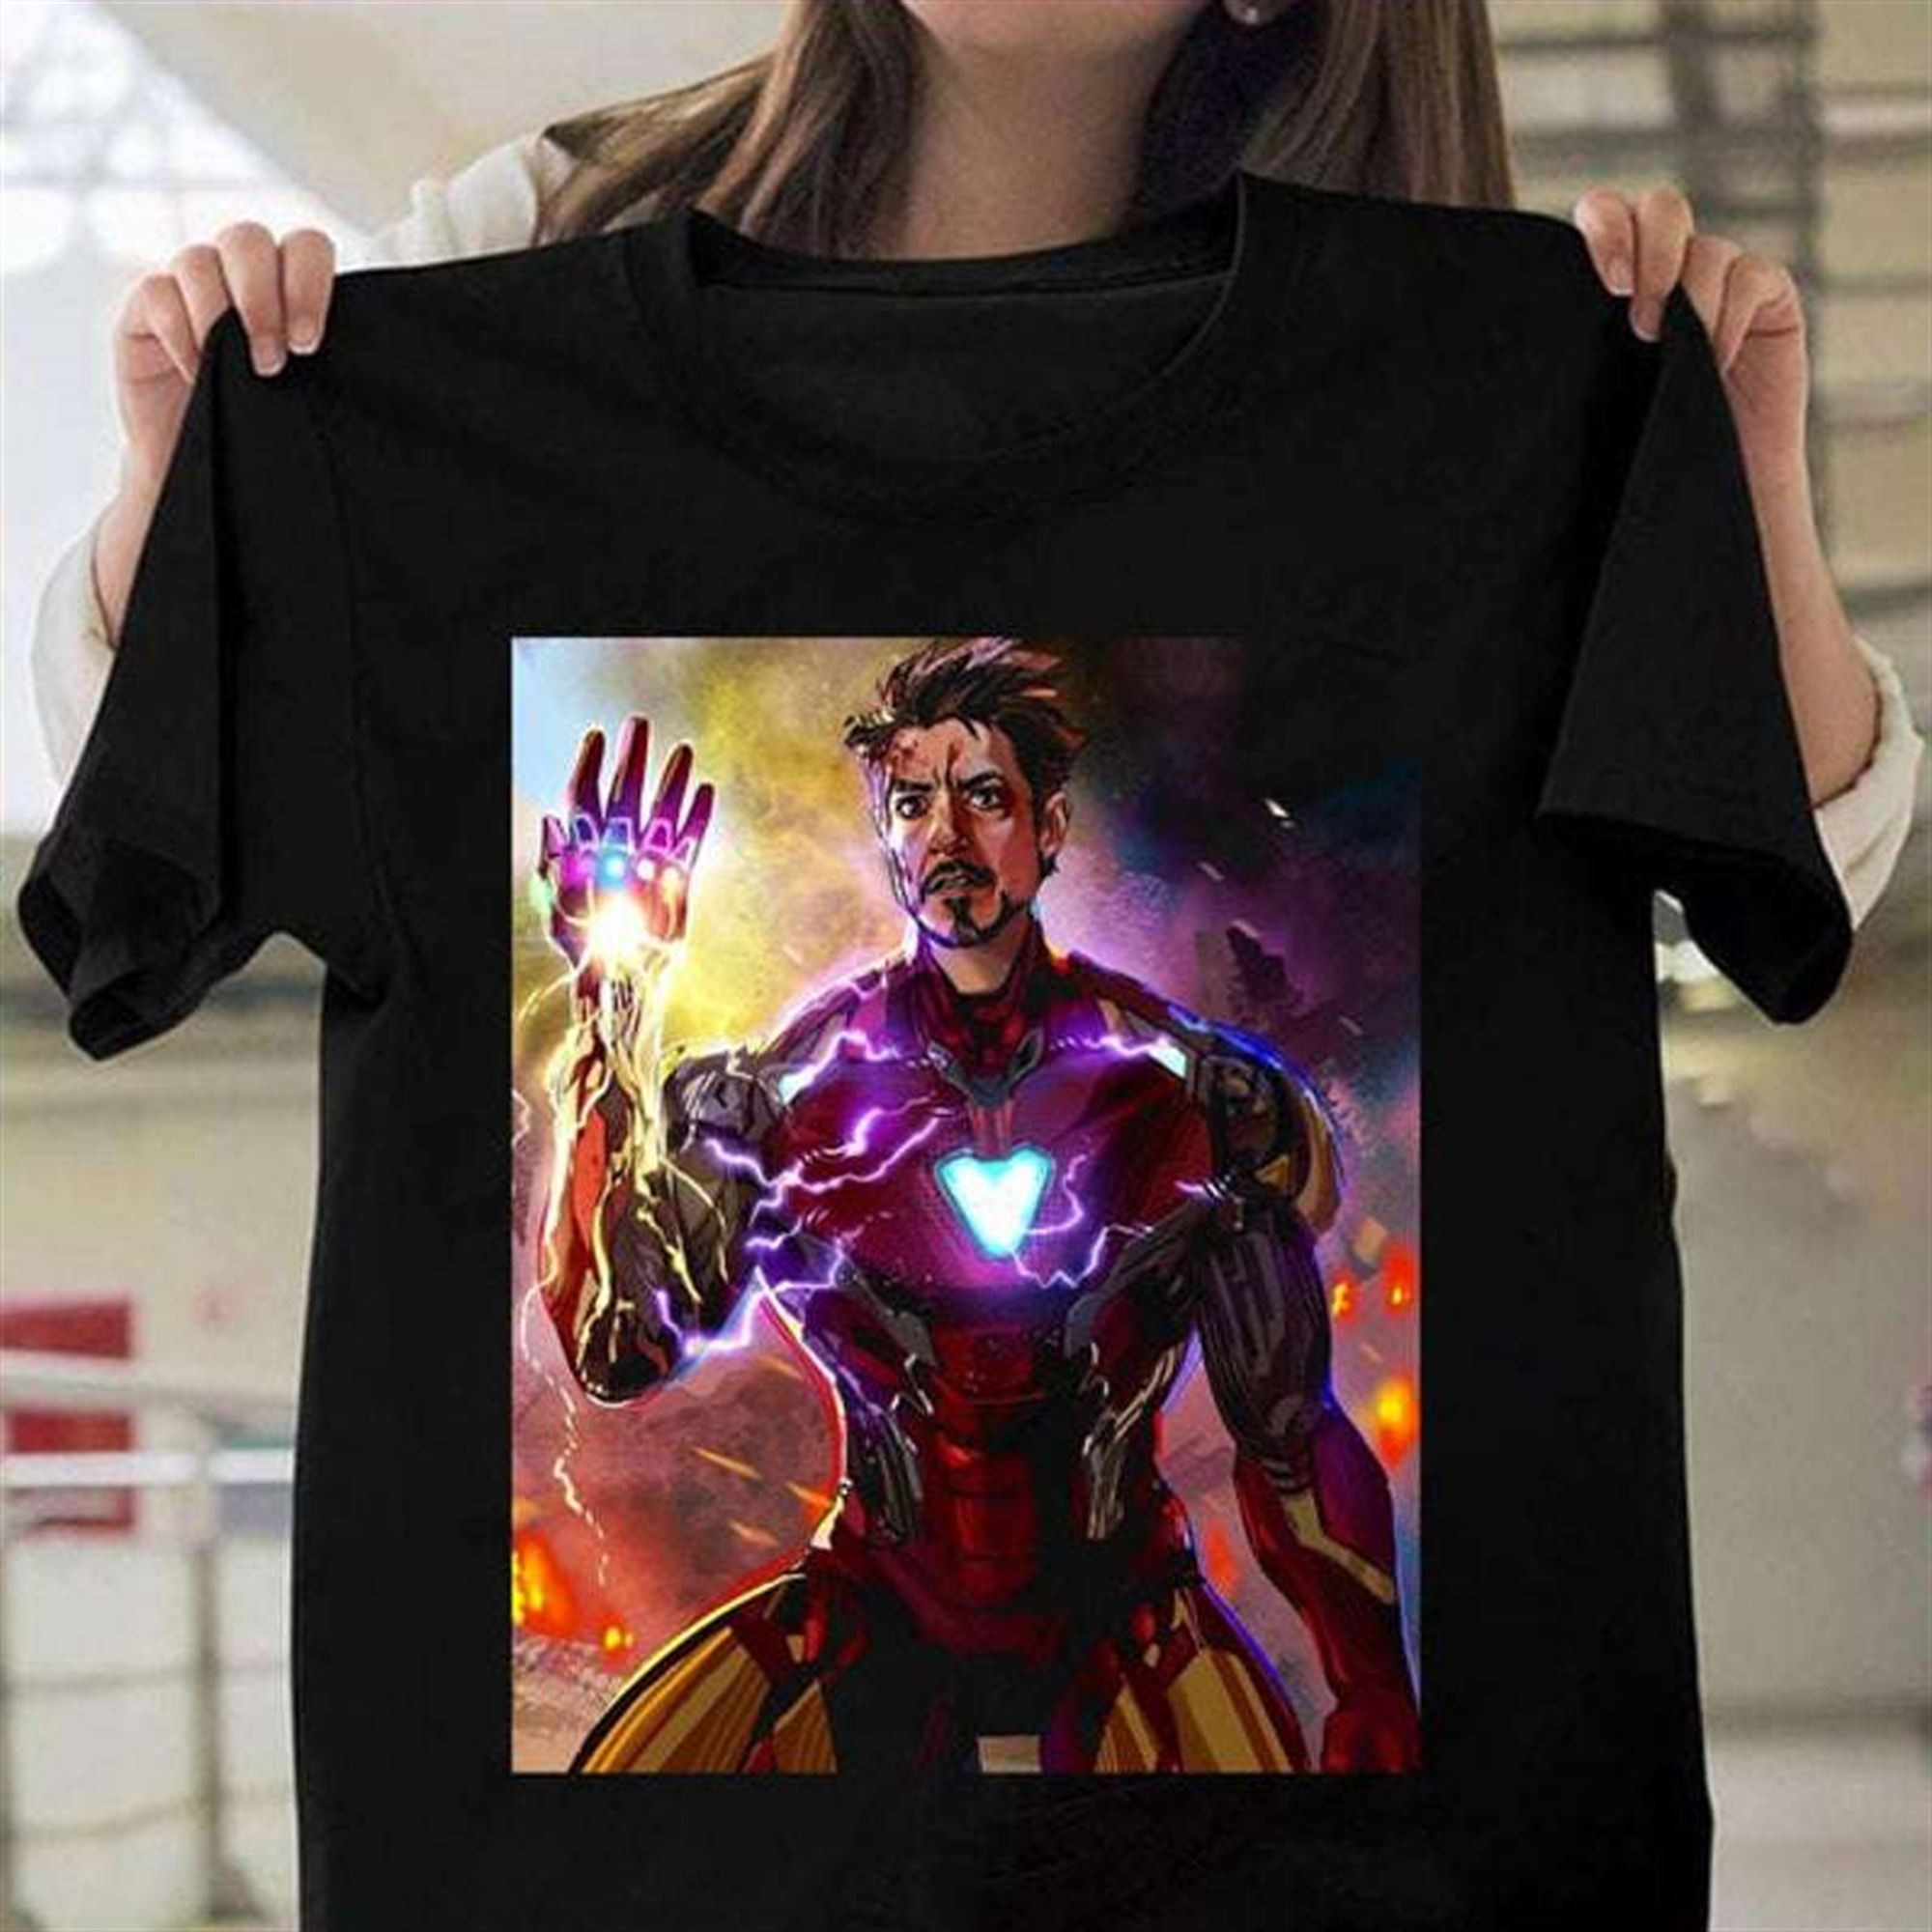 Marvel Iron Man Classic Unisex T Shirt Plus Size Up To 5x